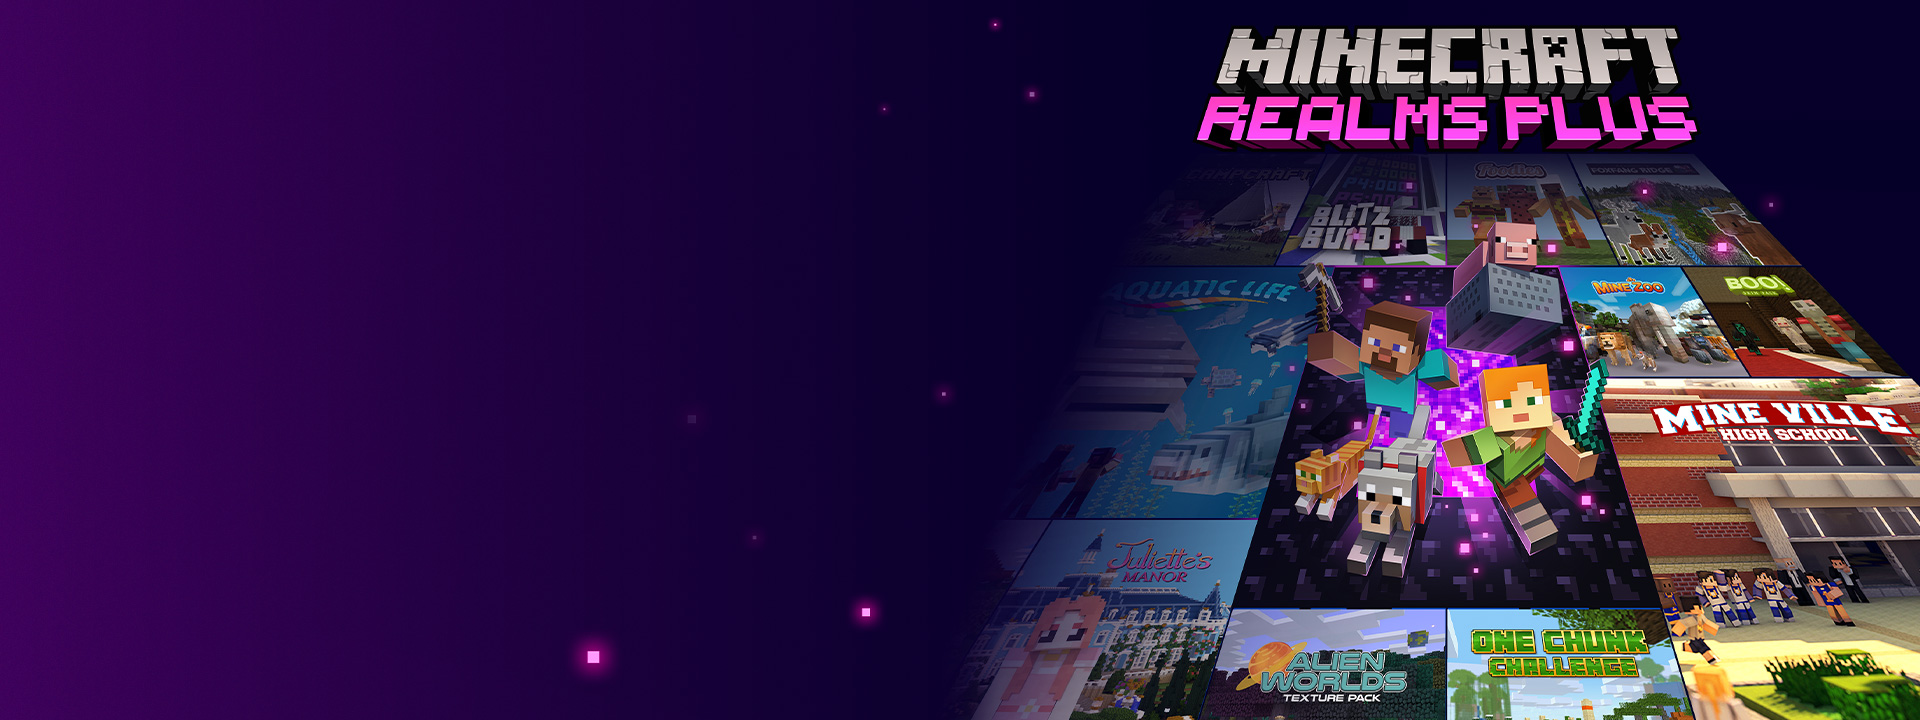 Minecraft Realms Plus, des personnages de Minecraft sortent d’un portail du Nether avec d’autres images de boîte de jeu à côté